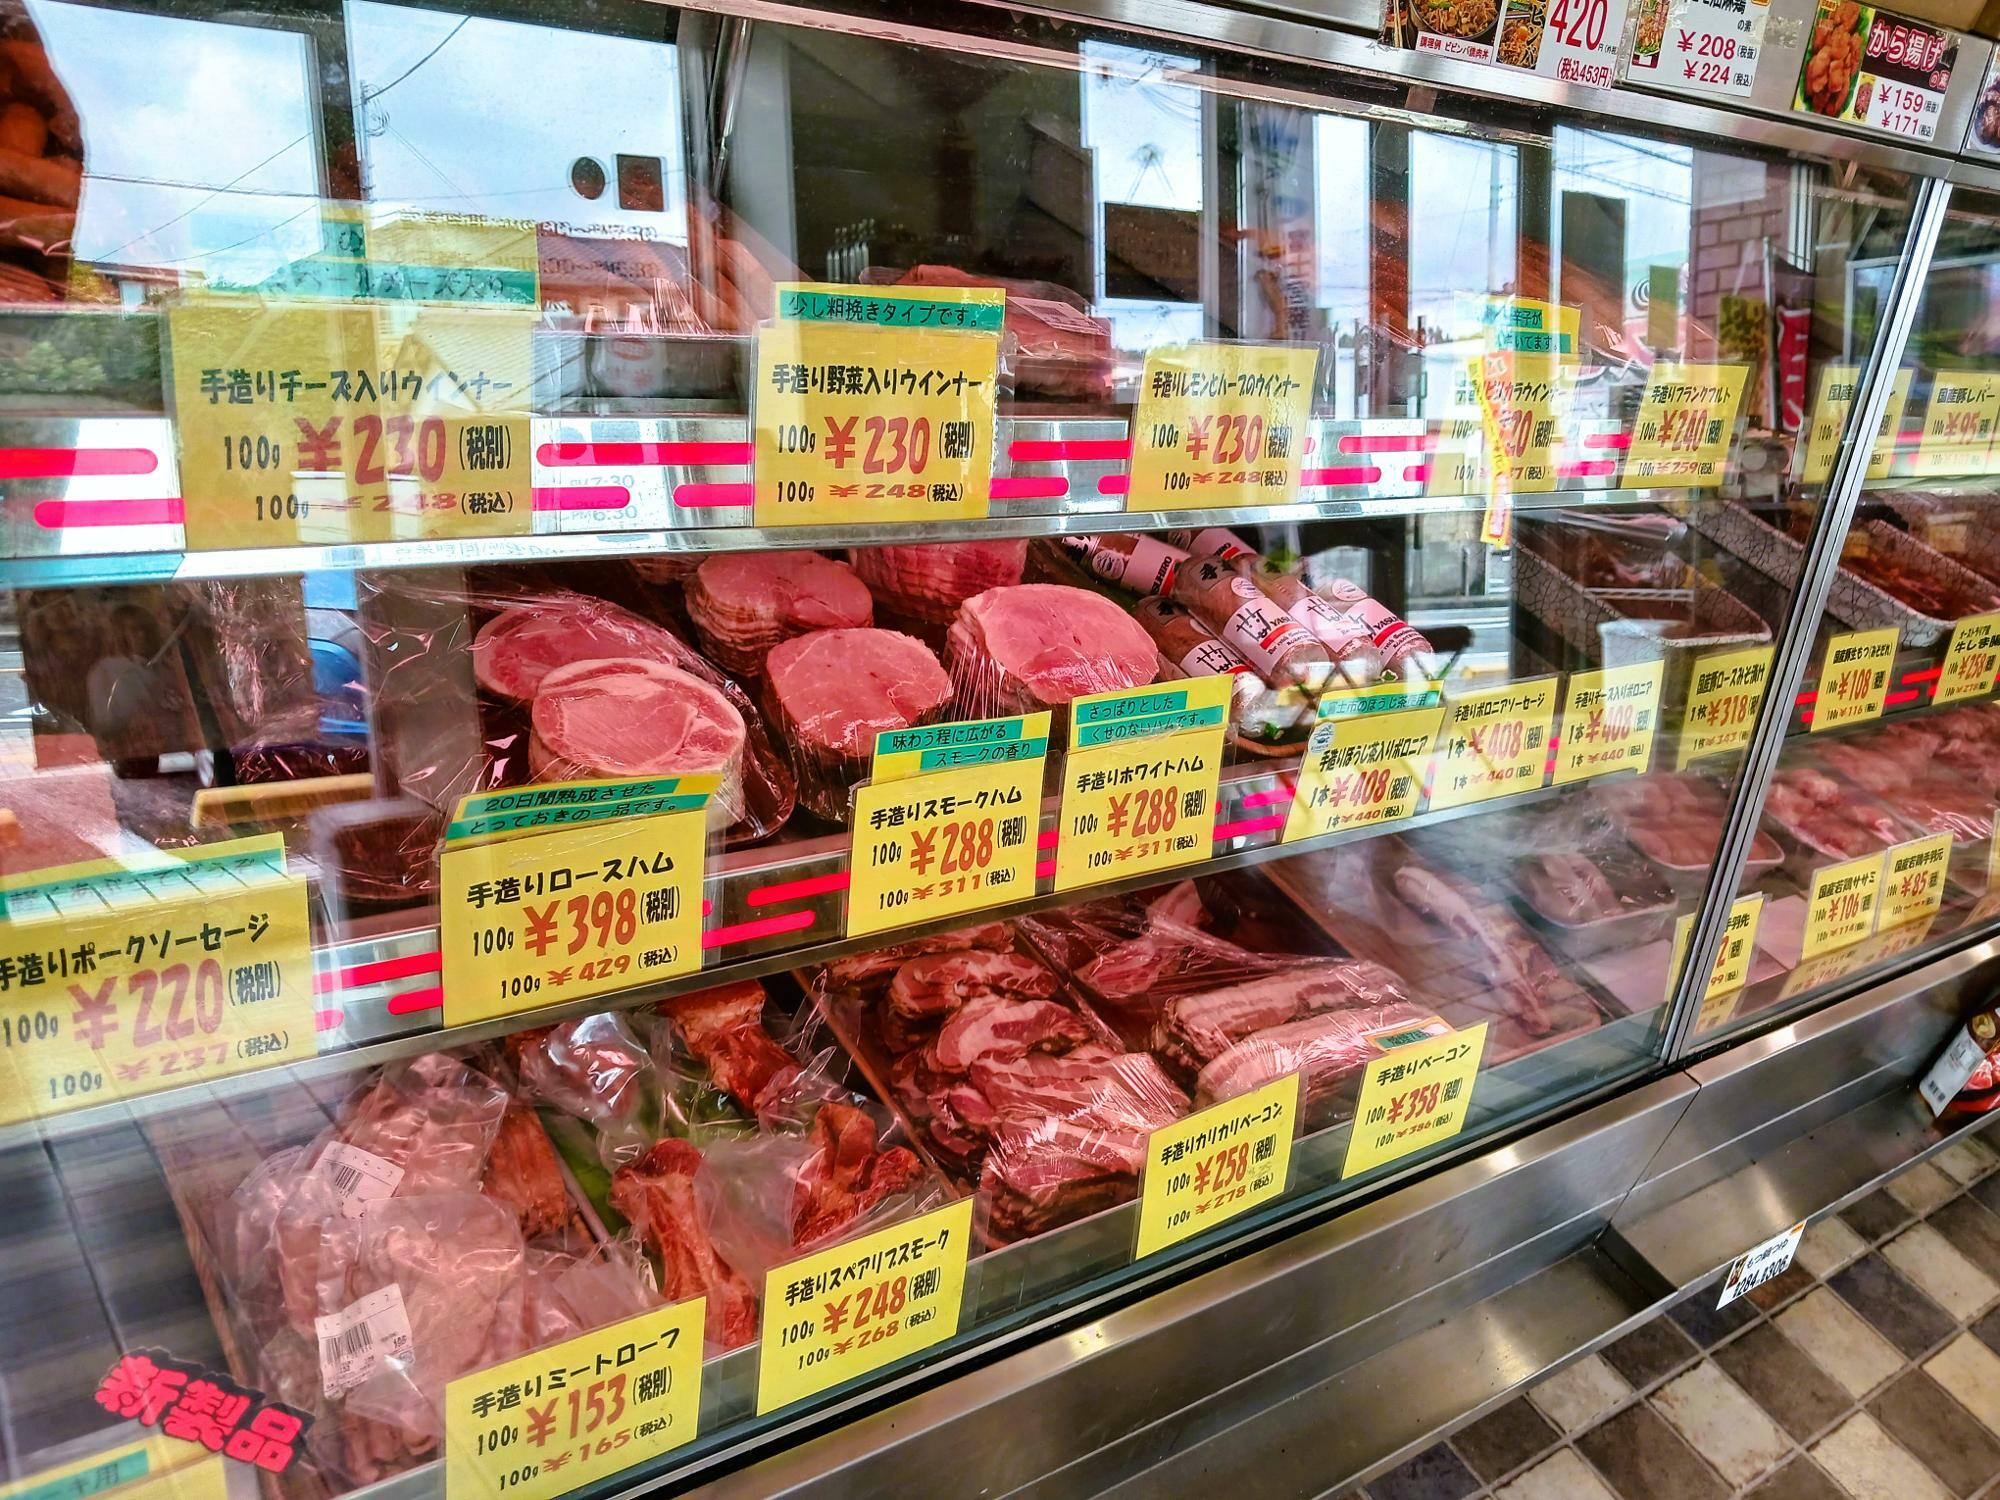 ガラスケースの中には色々な種類のお肉が並んでいます